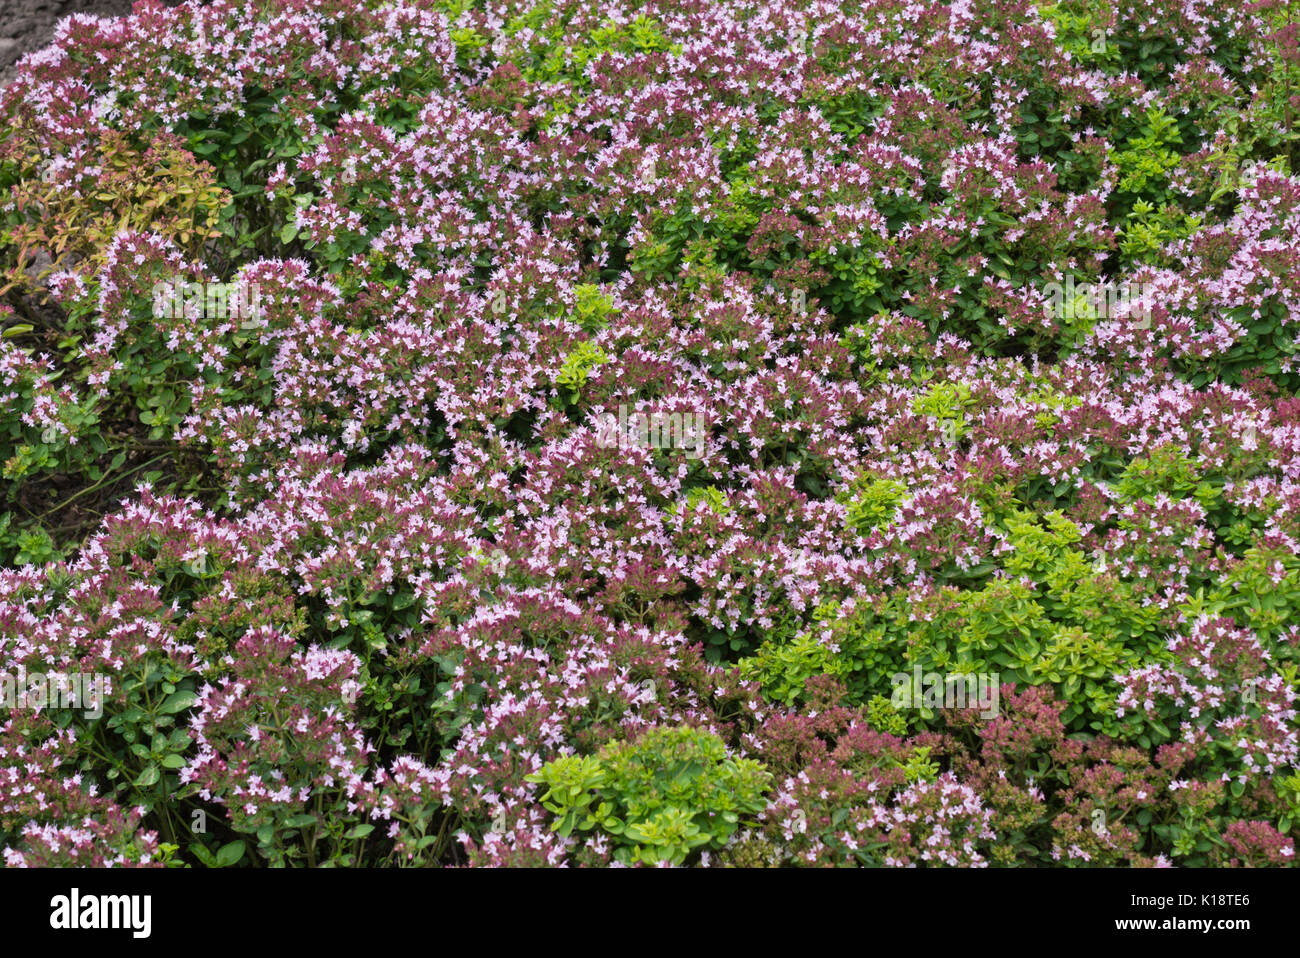 Greek oregano (Origanum vulgare 'Compactum') Stock Photo